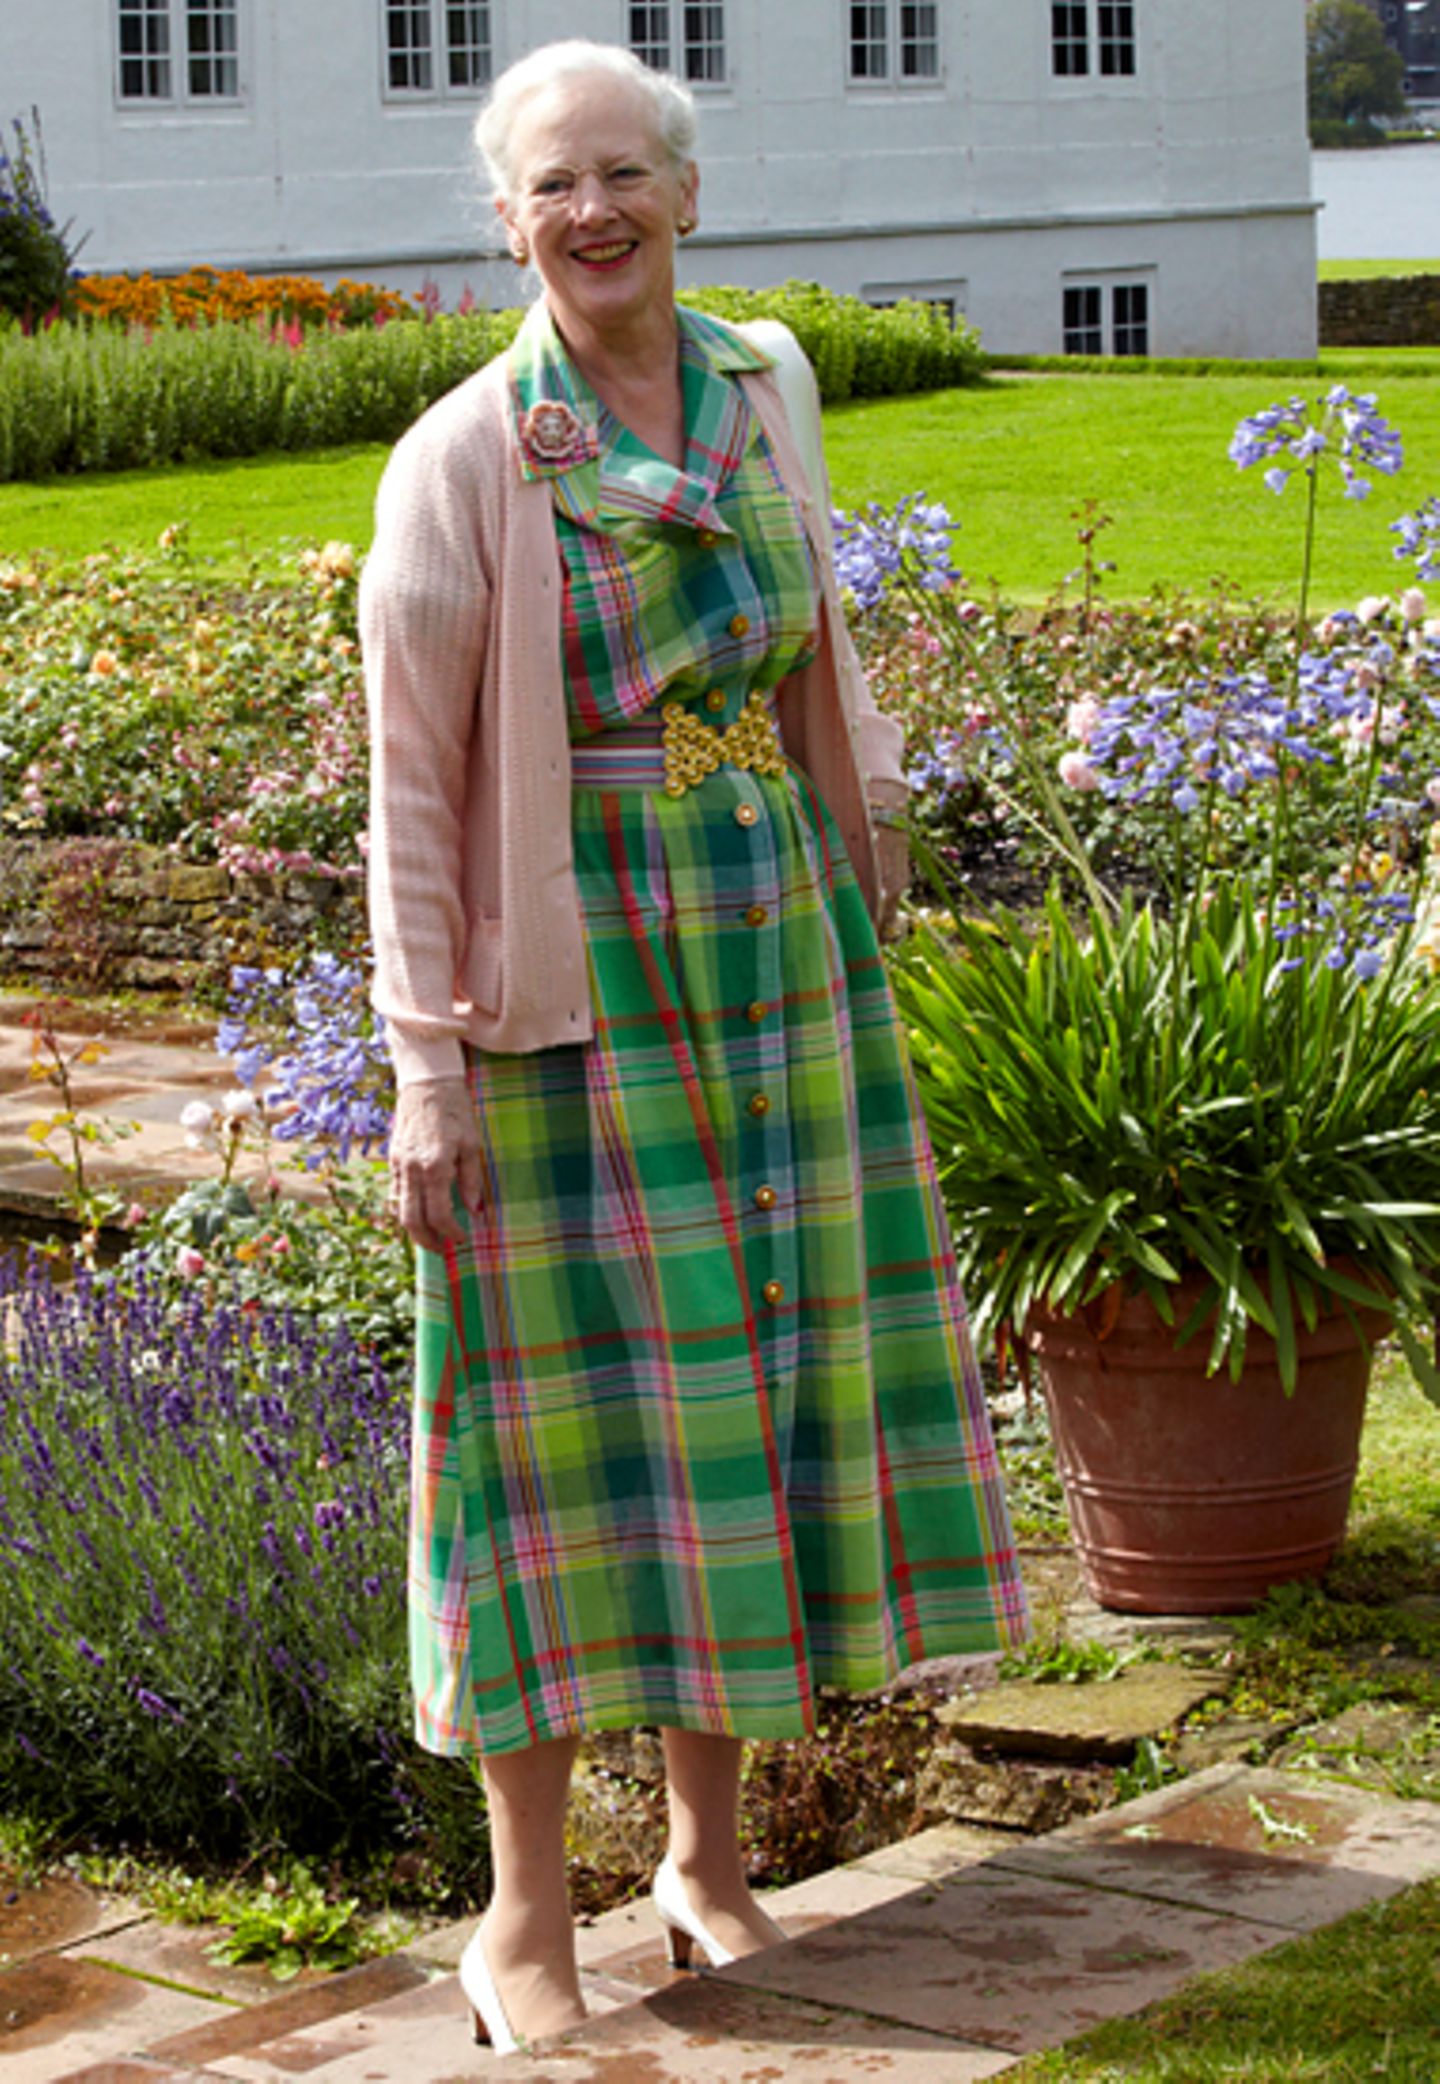 Juli 2012: Beim offiziellen Sommer-Fotoshooting trägt Margrethe ein Kleid, dass sie schon 2007 zum gleichen Fototermin getragen